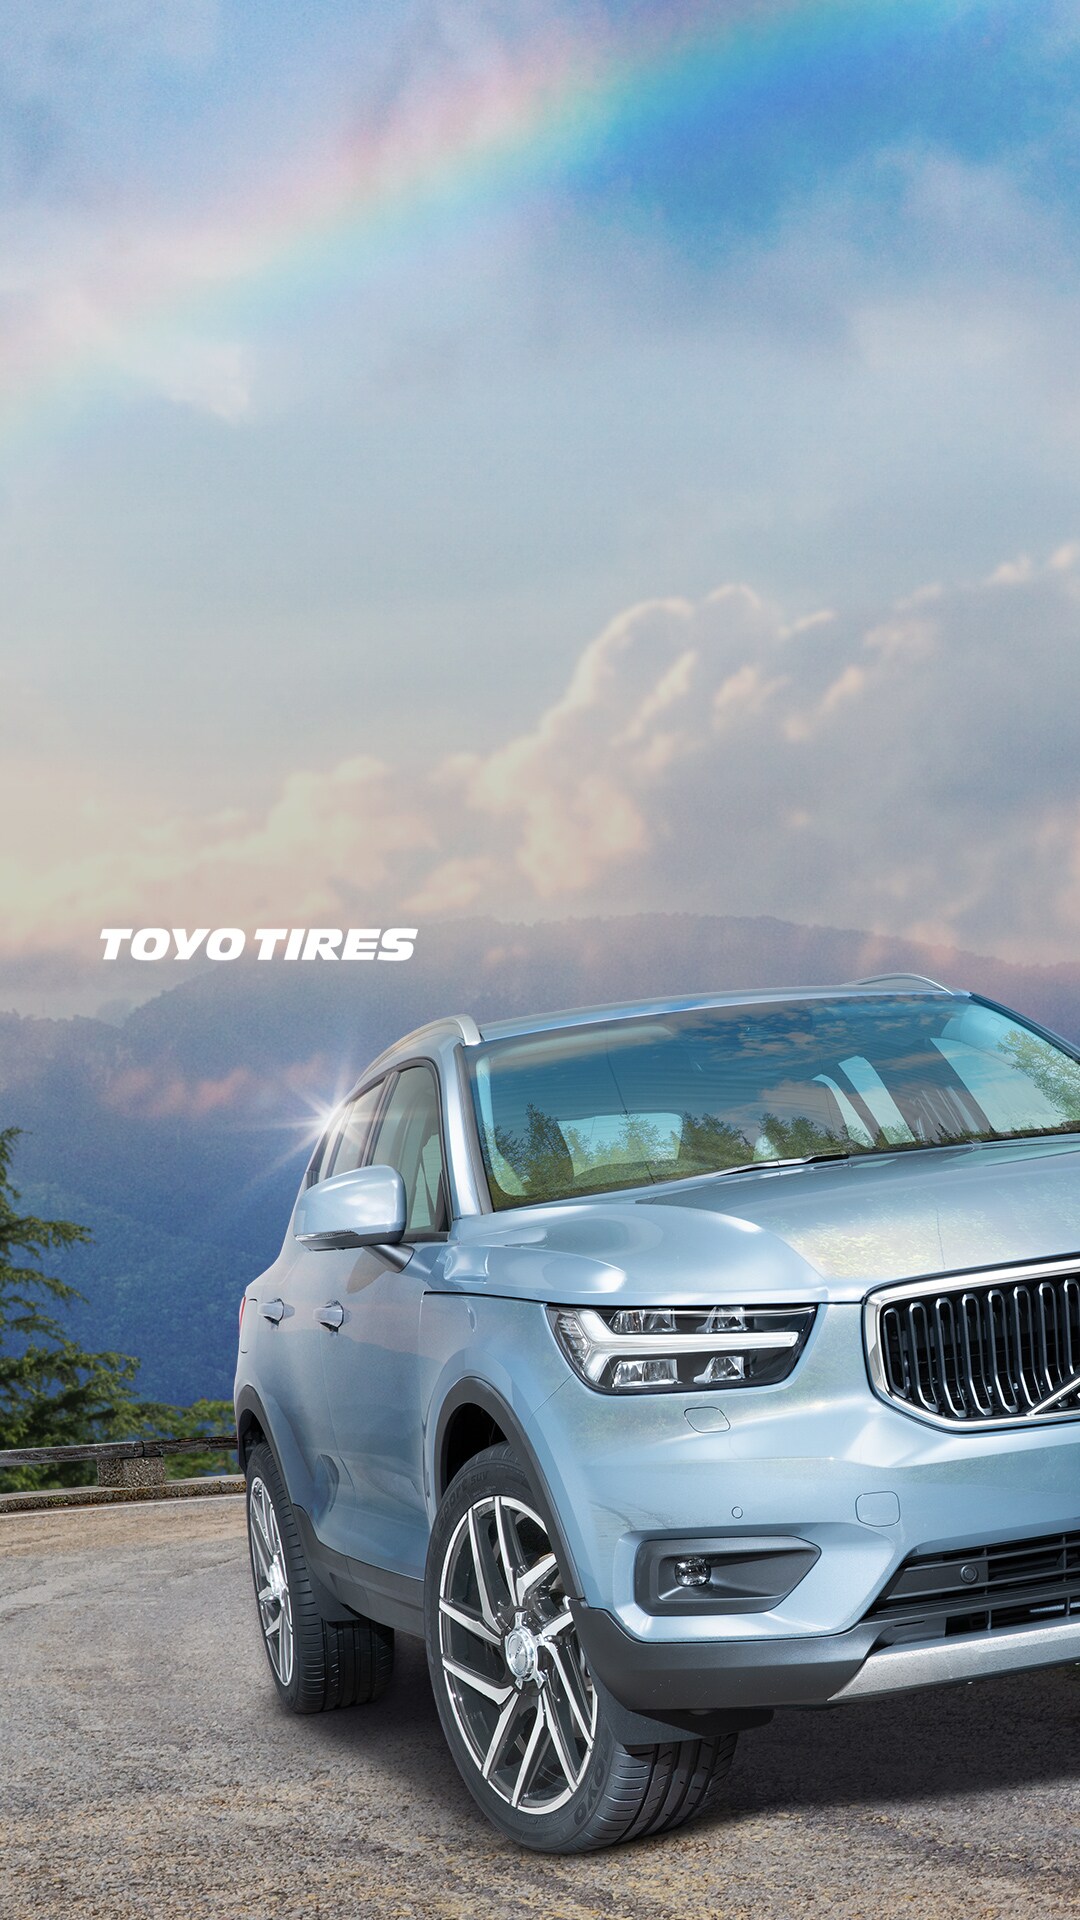 Toyo Tires オリジナル壁紙 カレンダー ギャラリー Toyo Tires トーヨータイヤ 企業サイト